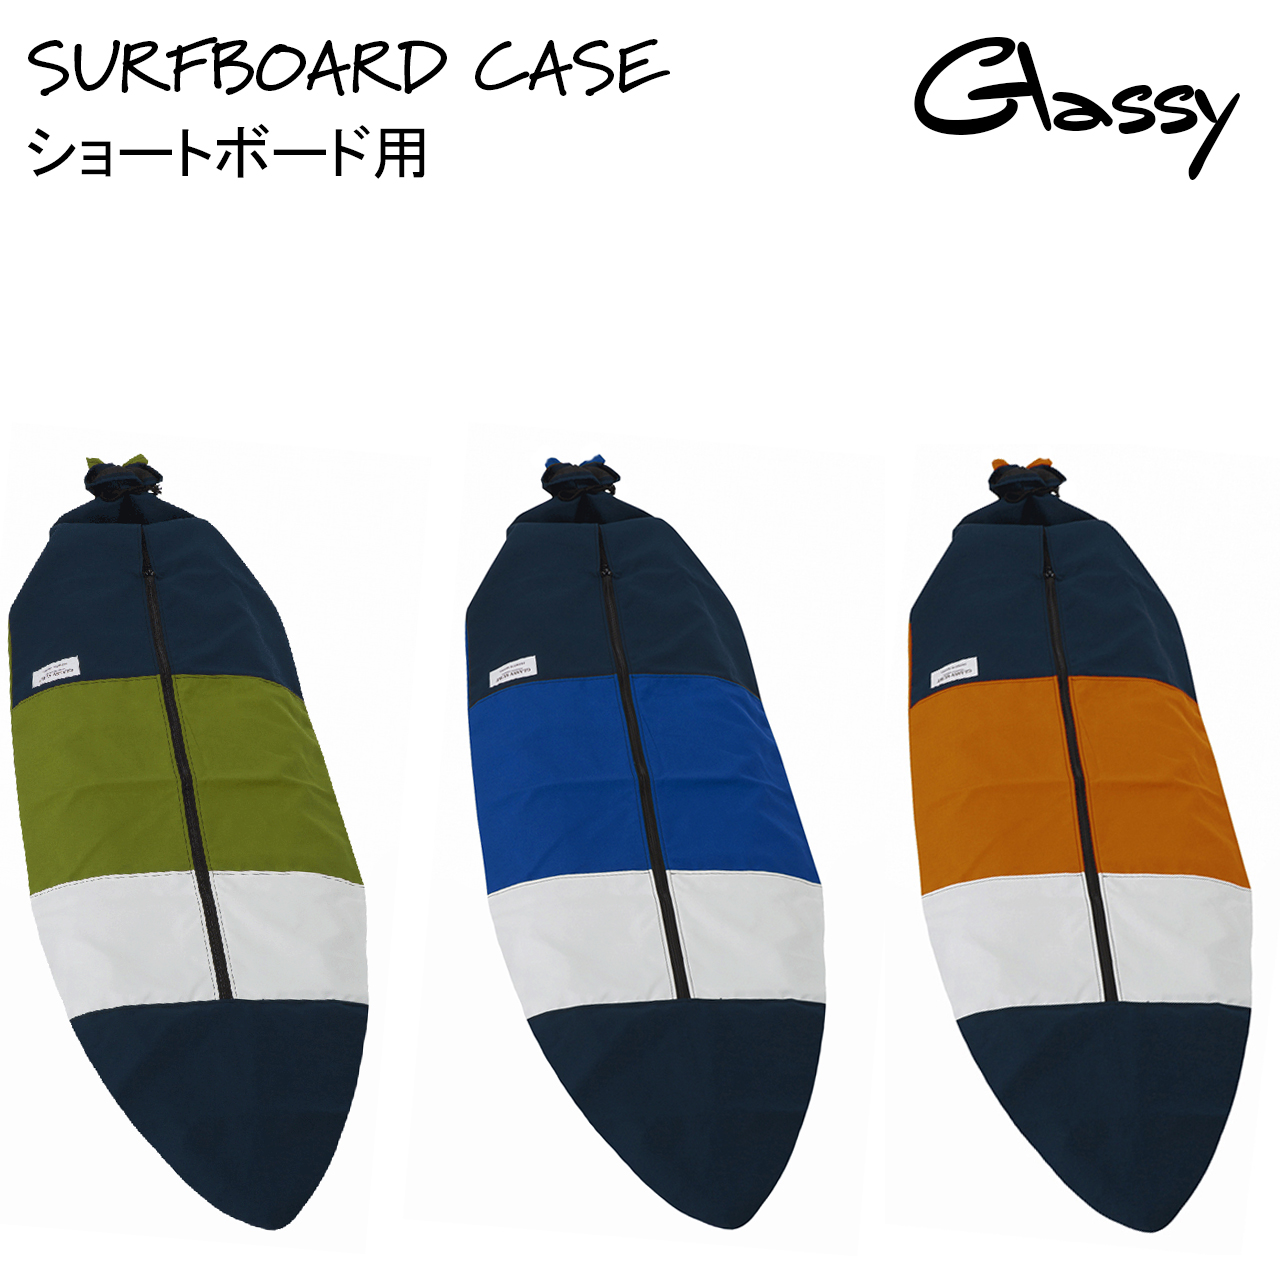  サーフボードケース サーフィン ボードケース ソフトケース サーフボードカバー ショートボード ニットケース より出入れしやすい 裏地あり GLASSY グラッシー